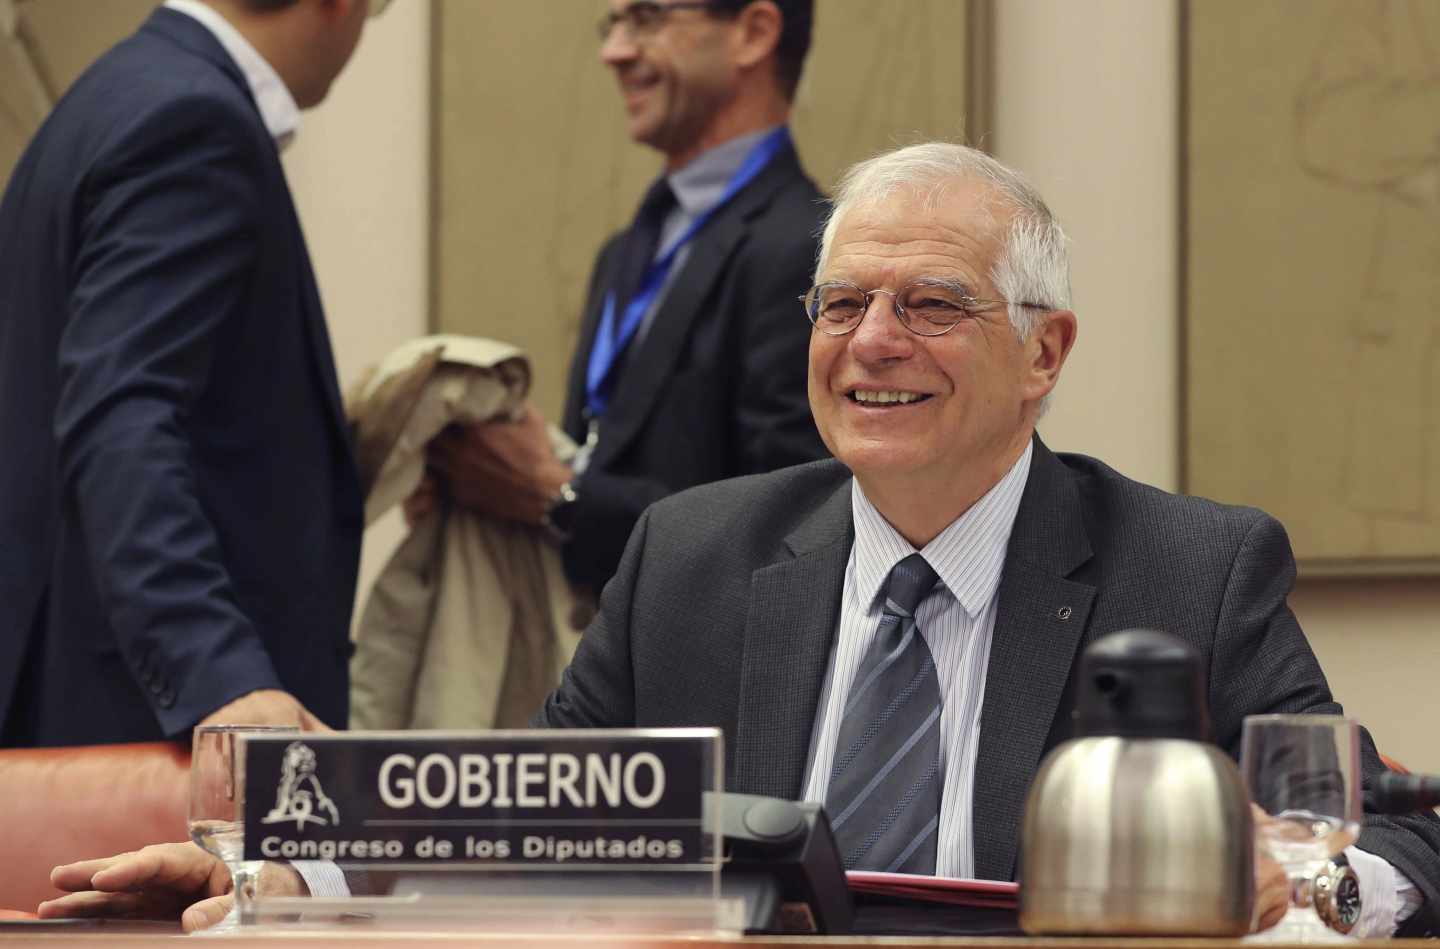 El ministro de Asuntos Exteriores, Josep Borrell, en el Congreso de los Diputados.